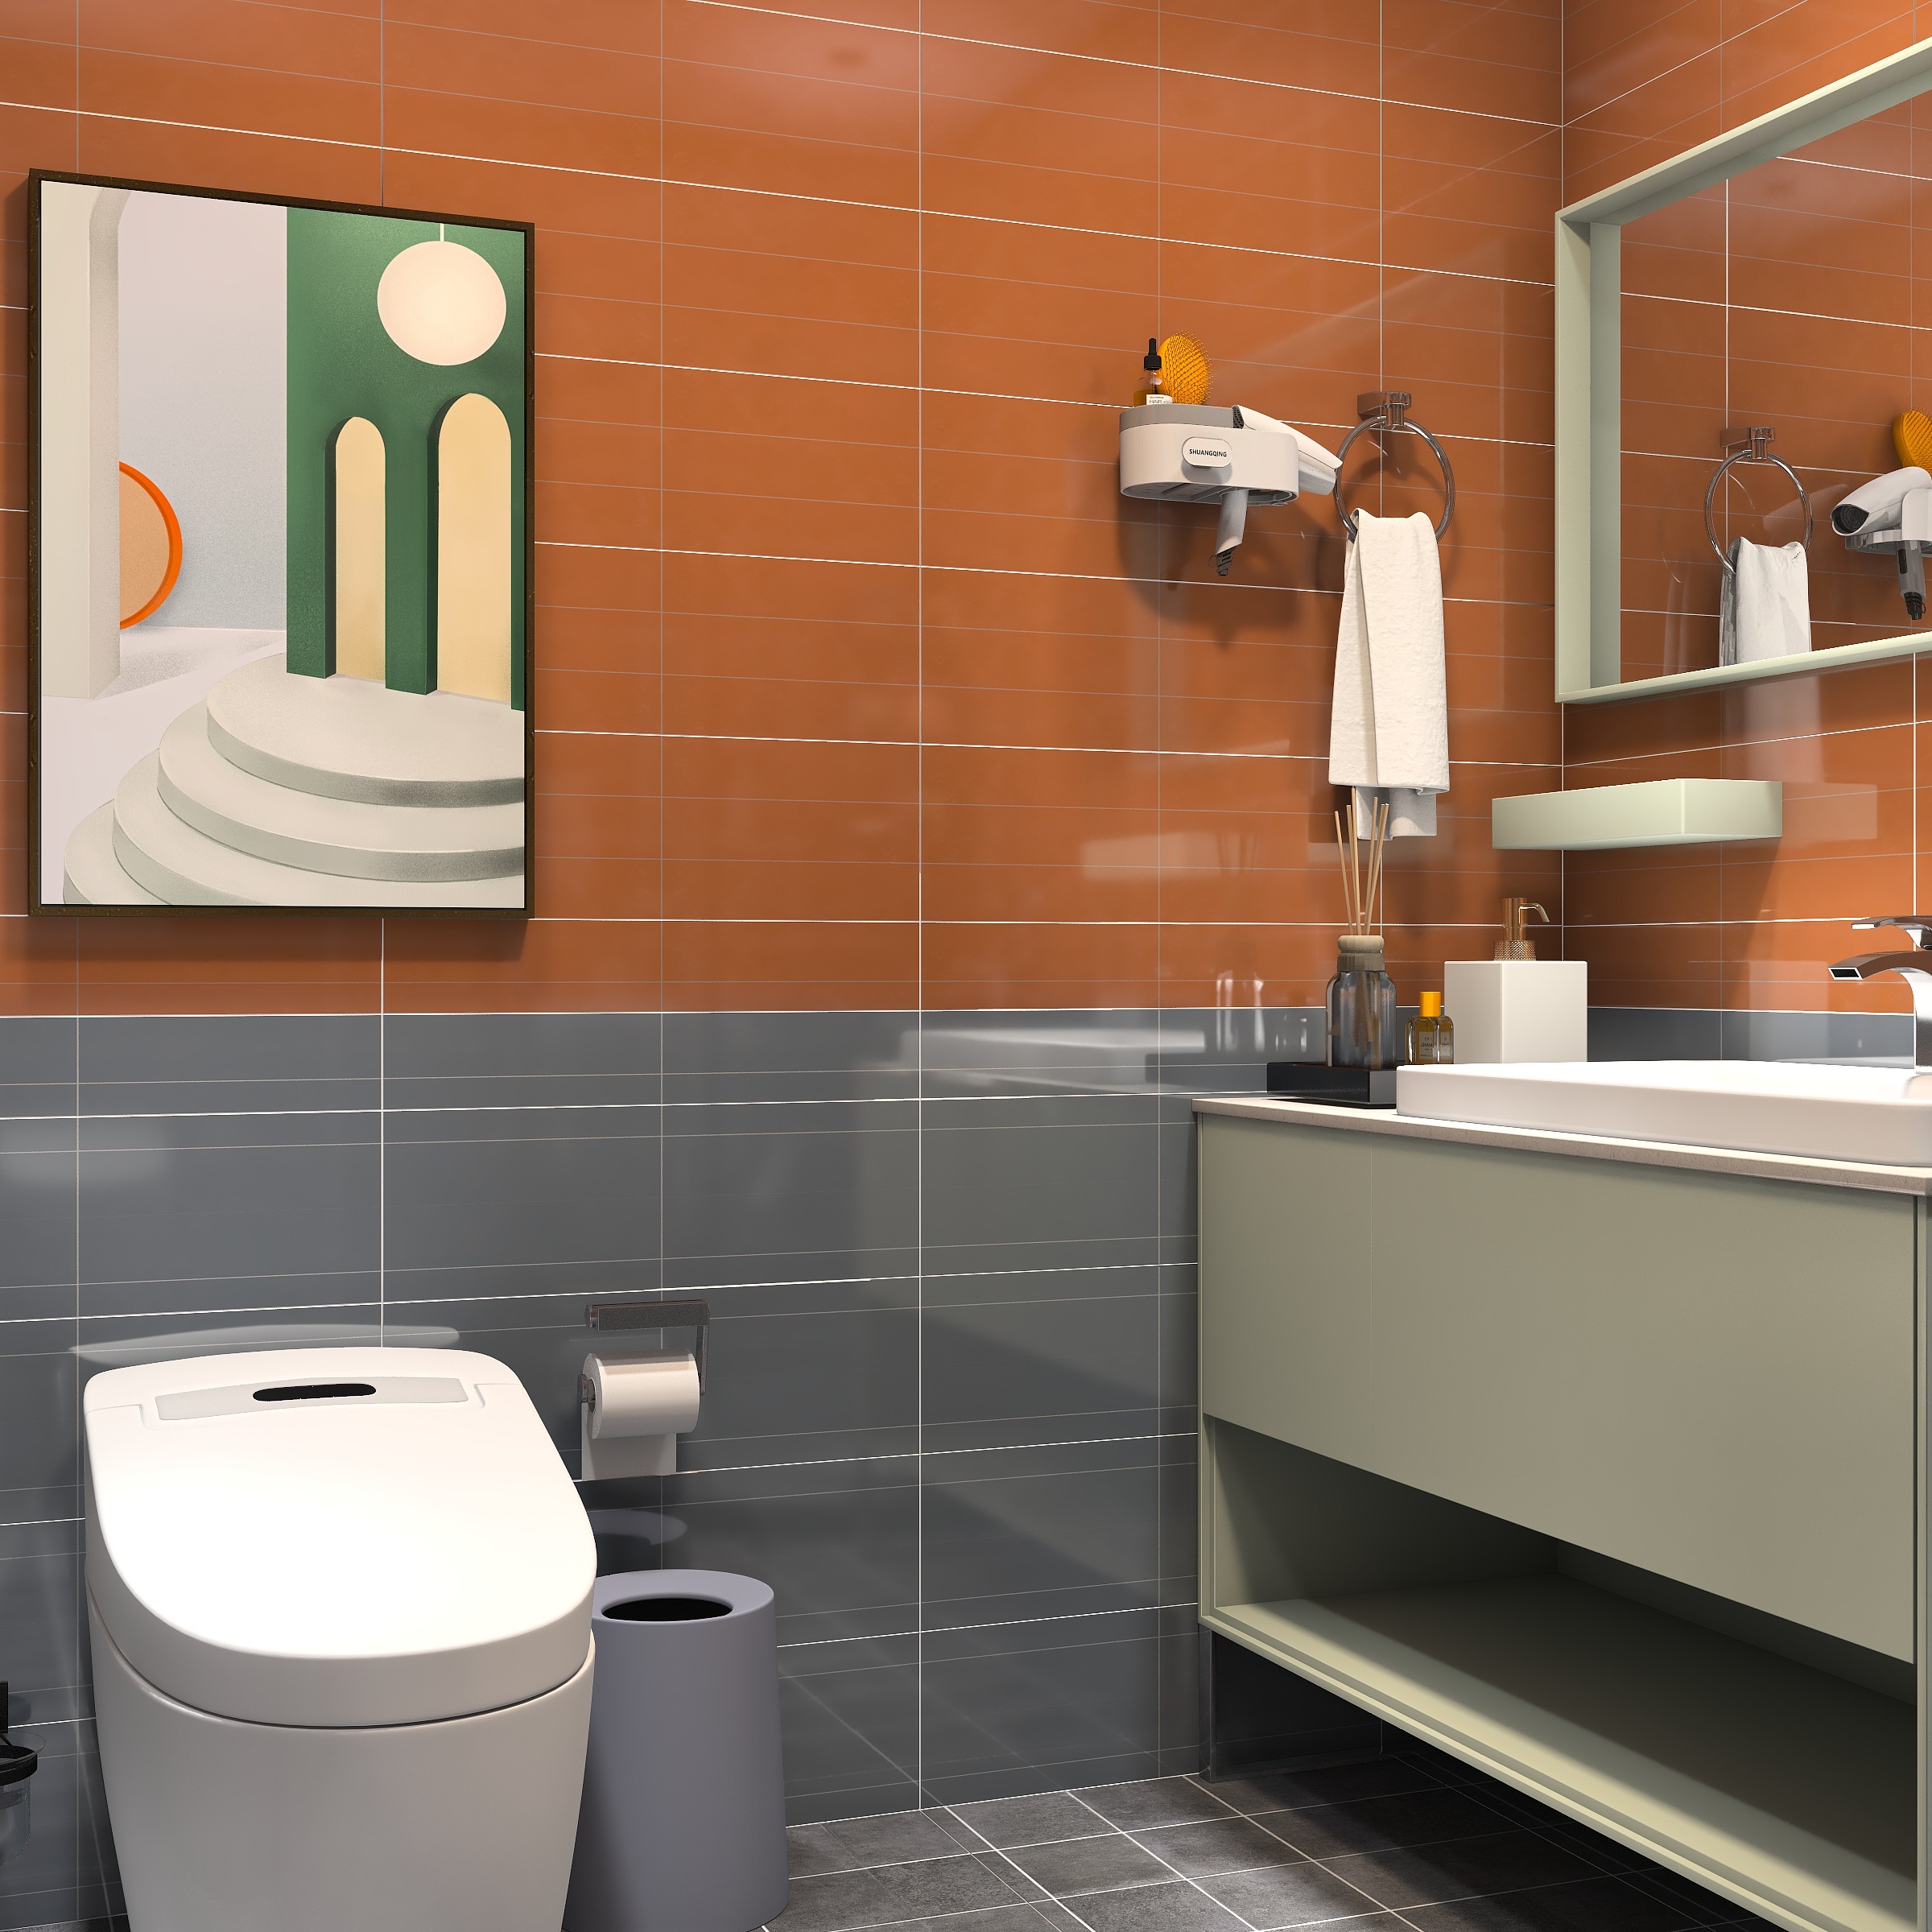 优秀作品 厕所也是一幅画耳东冬设计事务所 设计师说: 简单实用为主